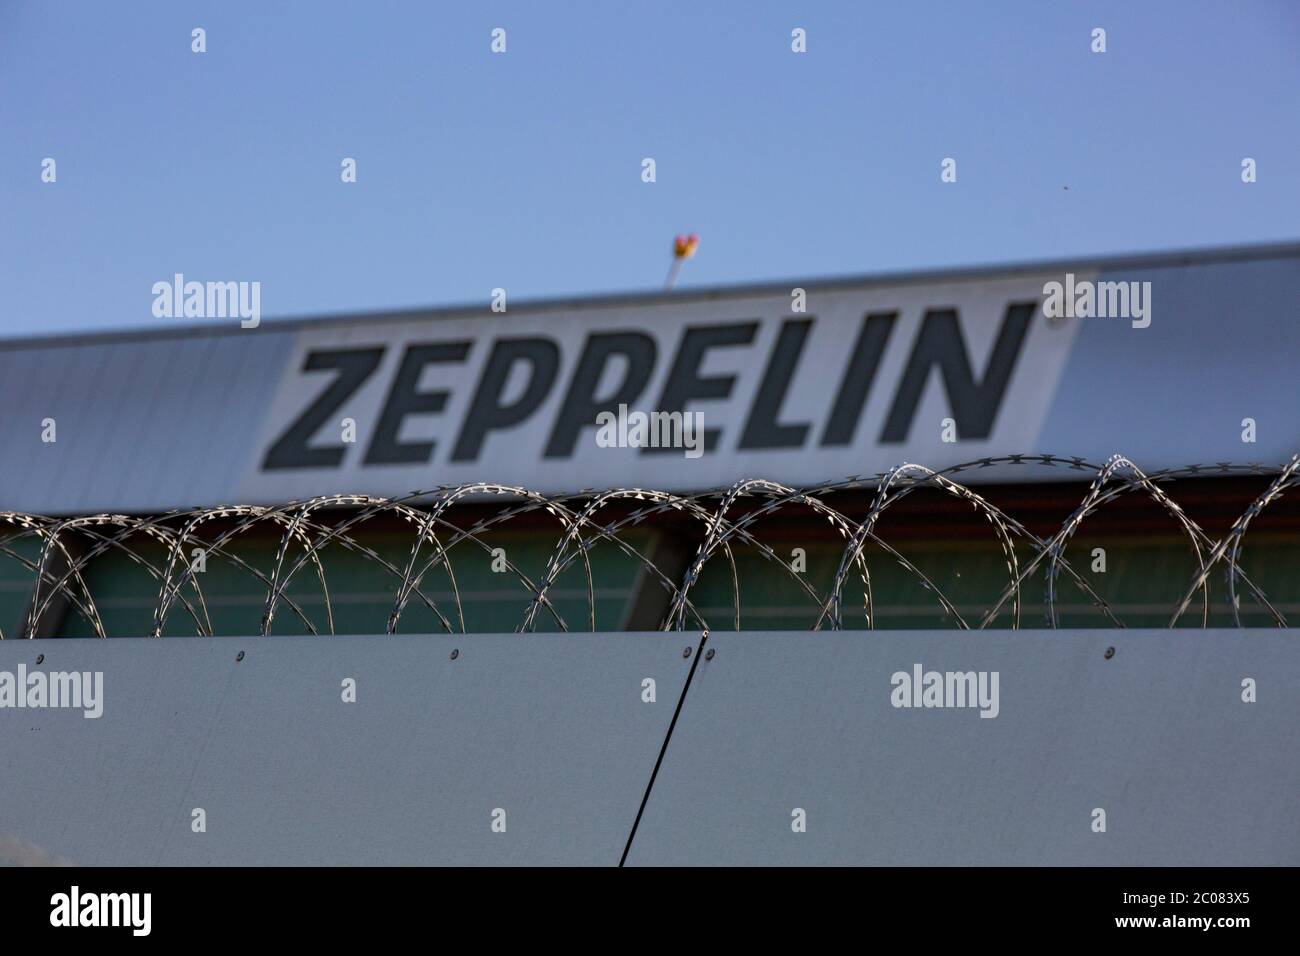 Überwachung von Coronaverstößen in der Region Bodensee-Oberschwaben aus dem Zeppelin NT. Friedrichshafen, 23.04.2020 Foto de stock